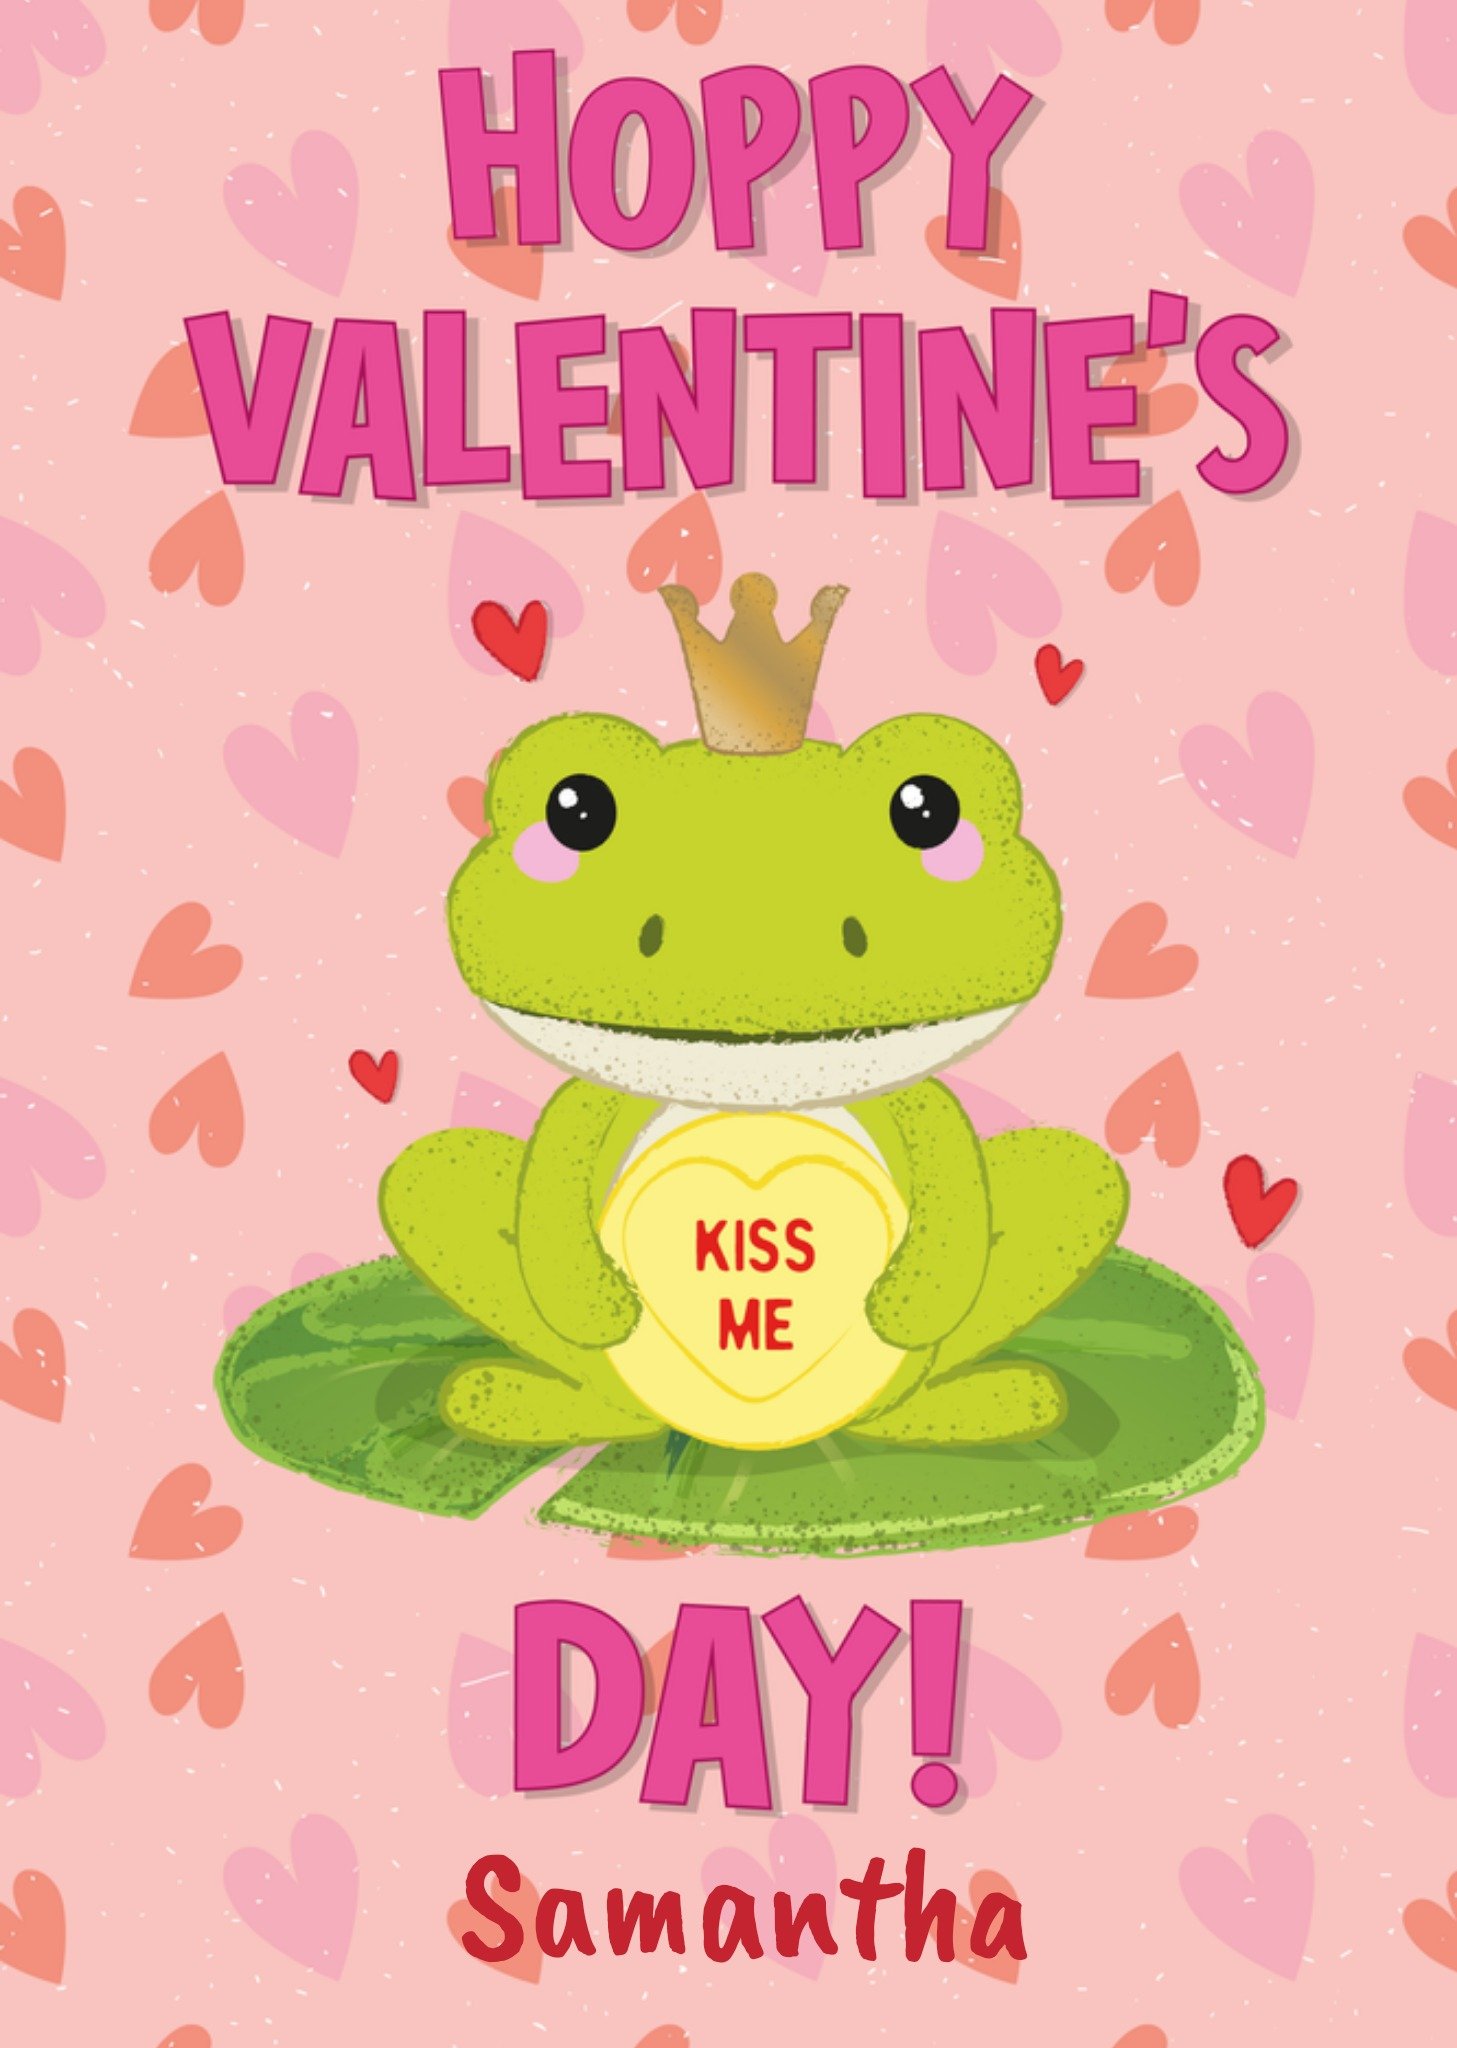 Swizzels Love Hearts Swizzels Hoppy Valentine's Day Card Ecard